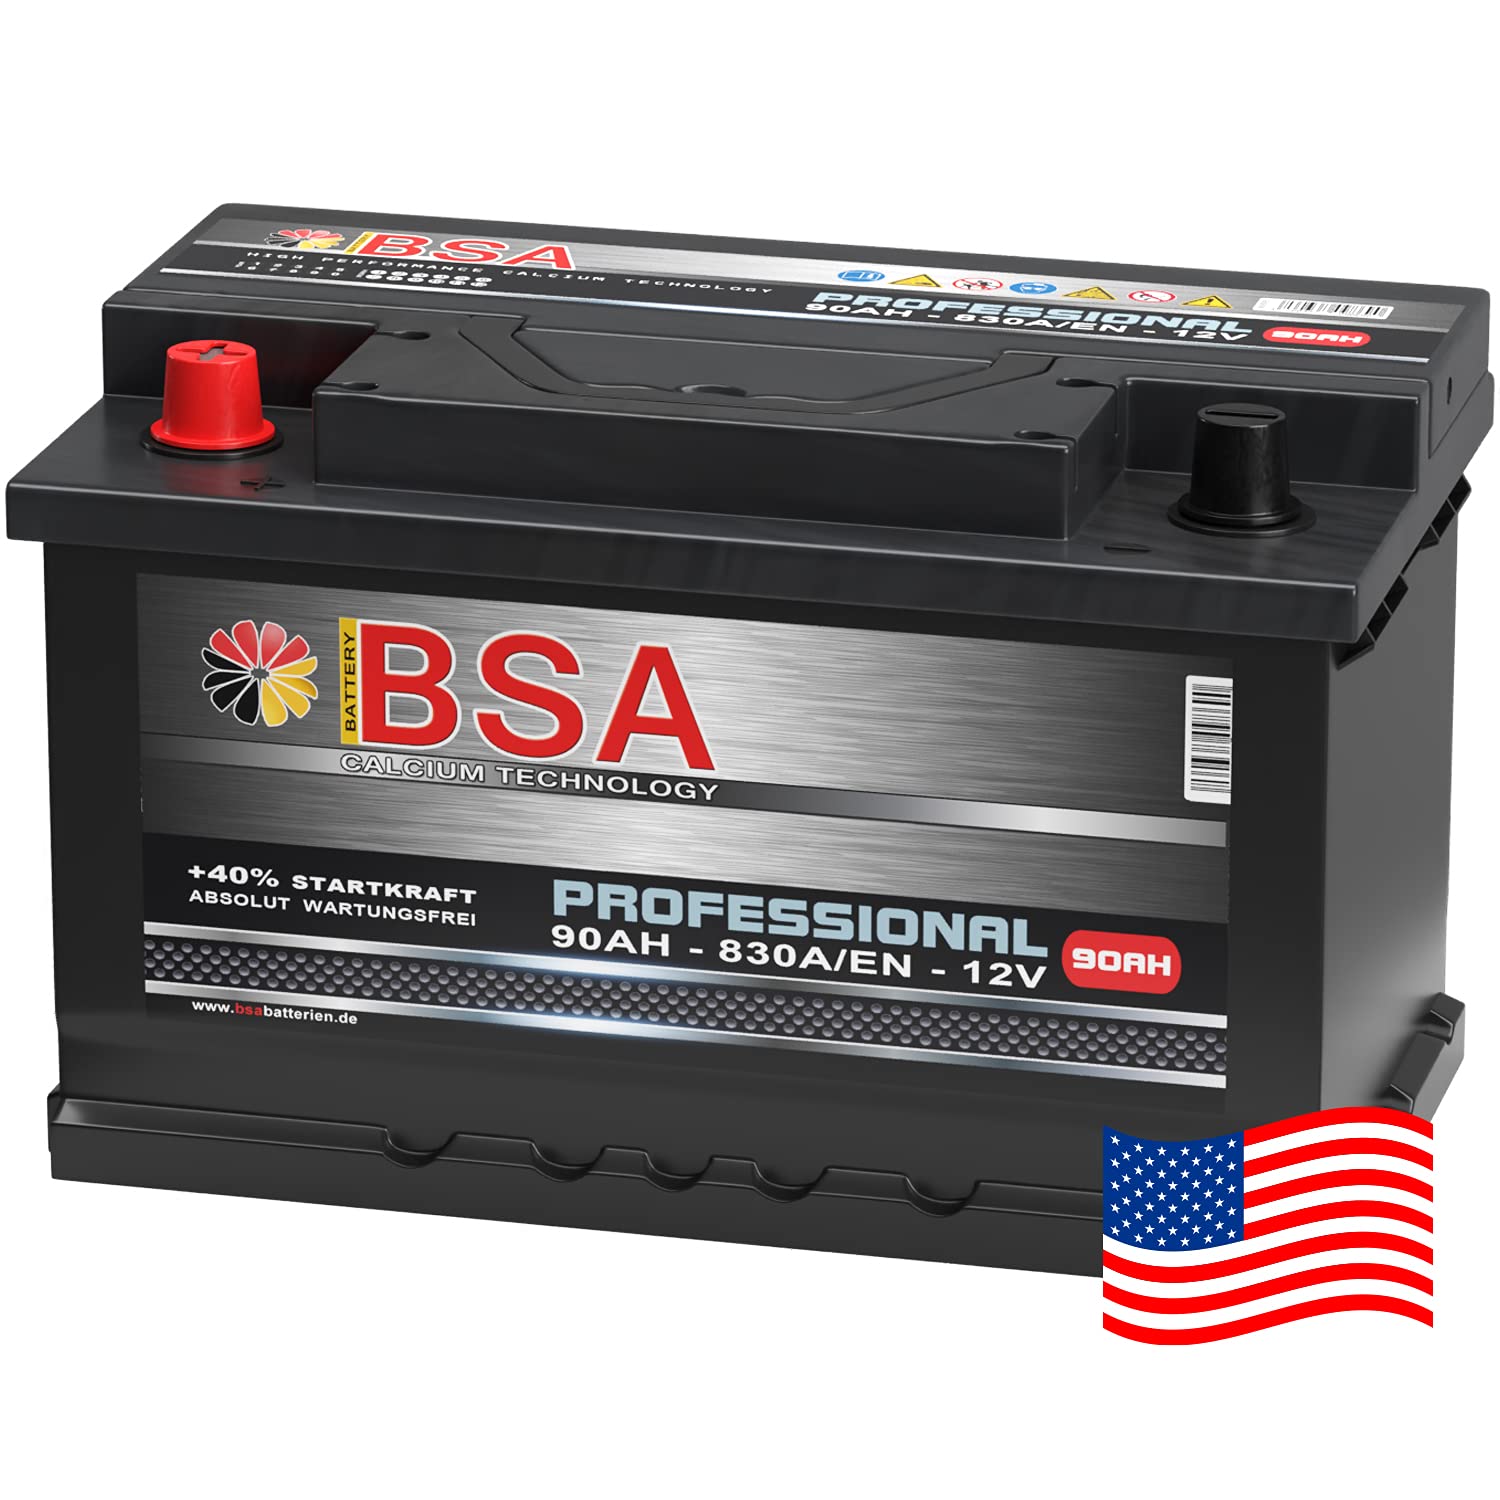 US Autobatterie 90Ah 830A/EN USA Batterie Pluspol Links Antara Captiva 59095 von BSA BATTERY HIGH QUALITY BATTERIES